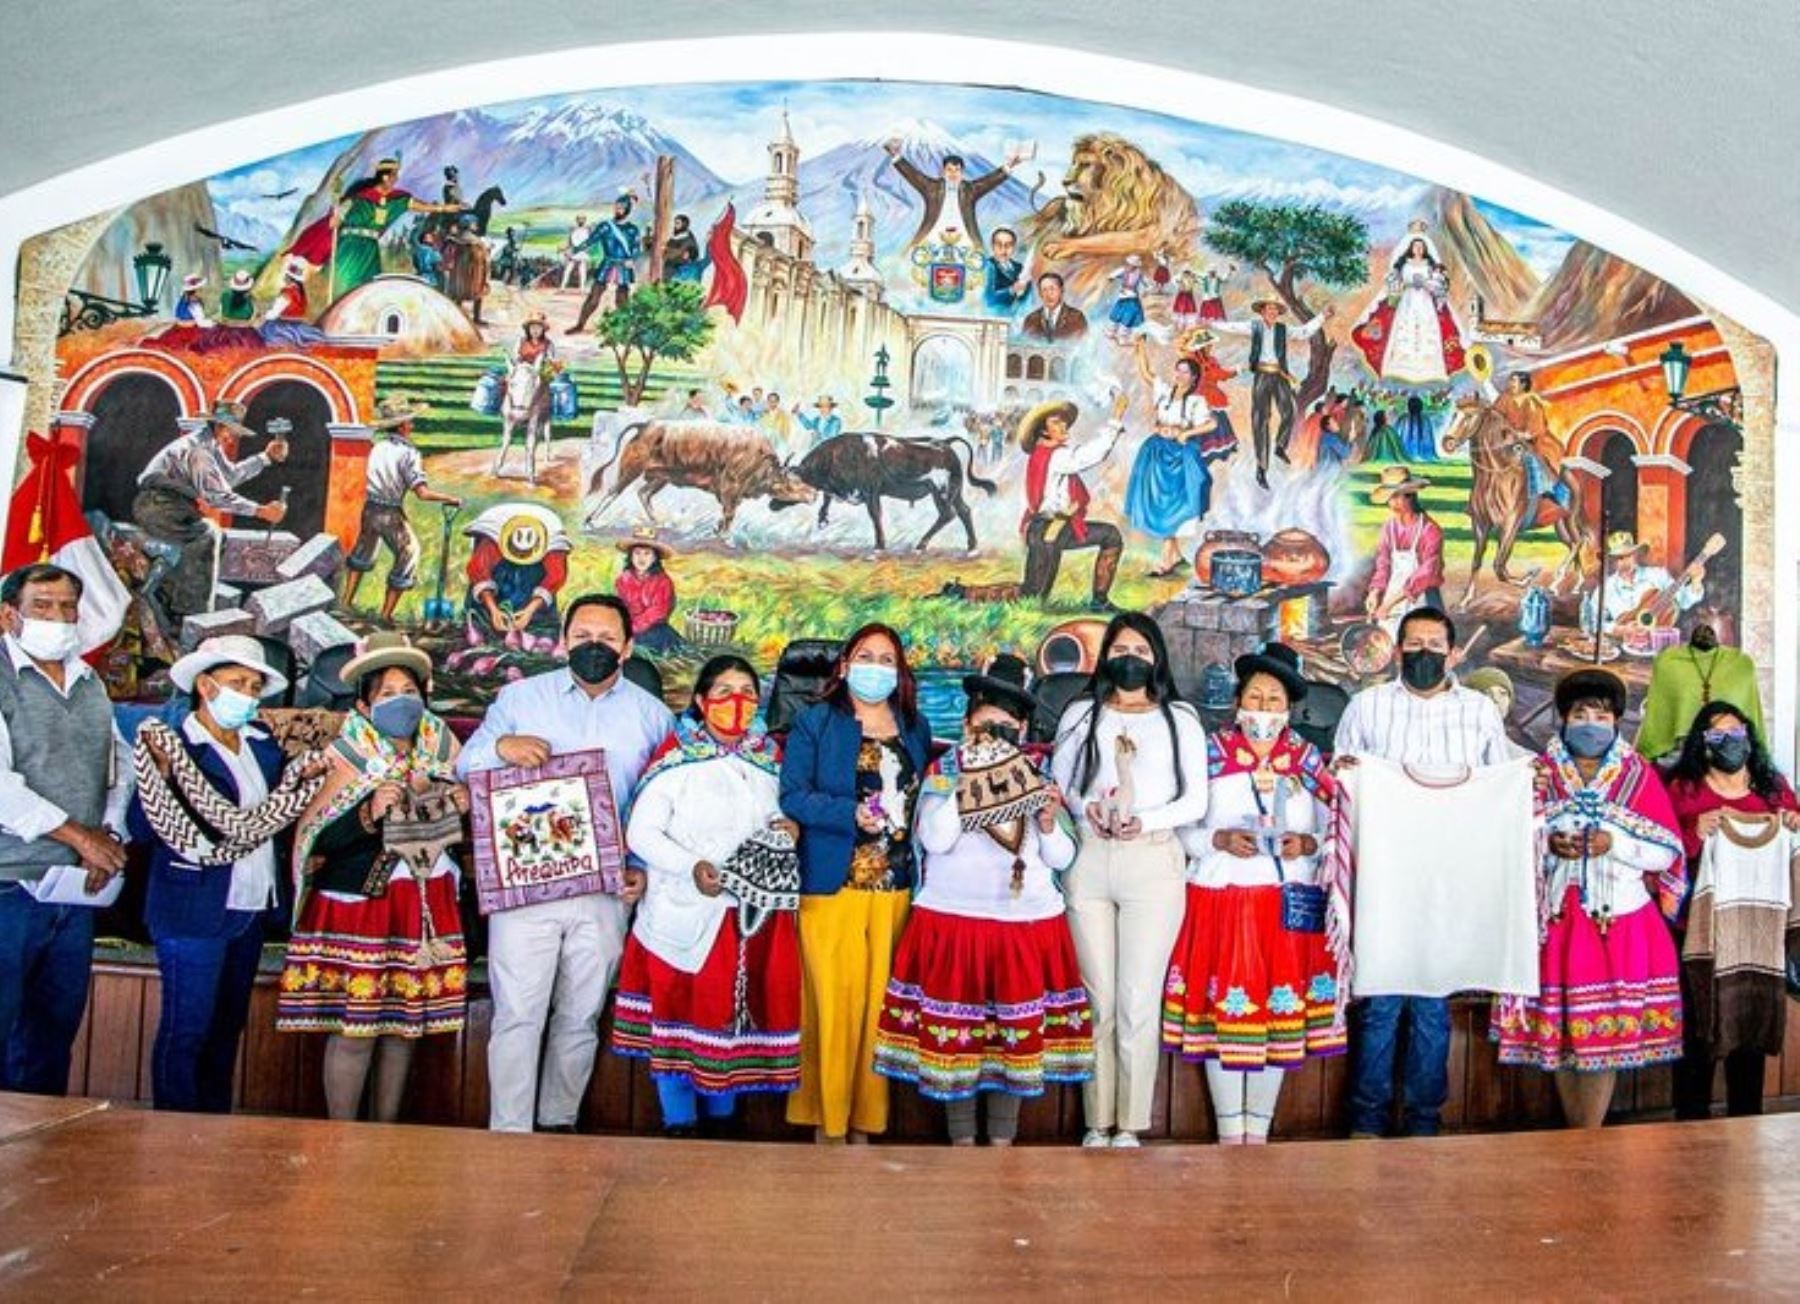 Artesanos de Arequipa podrán reactivar su economía gracias a la feria artesanal que se organiza como parte de las actividades por el aniversario de fundación de la Ciudad Blanca. ANDINA/Difusión